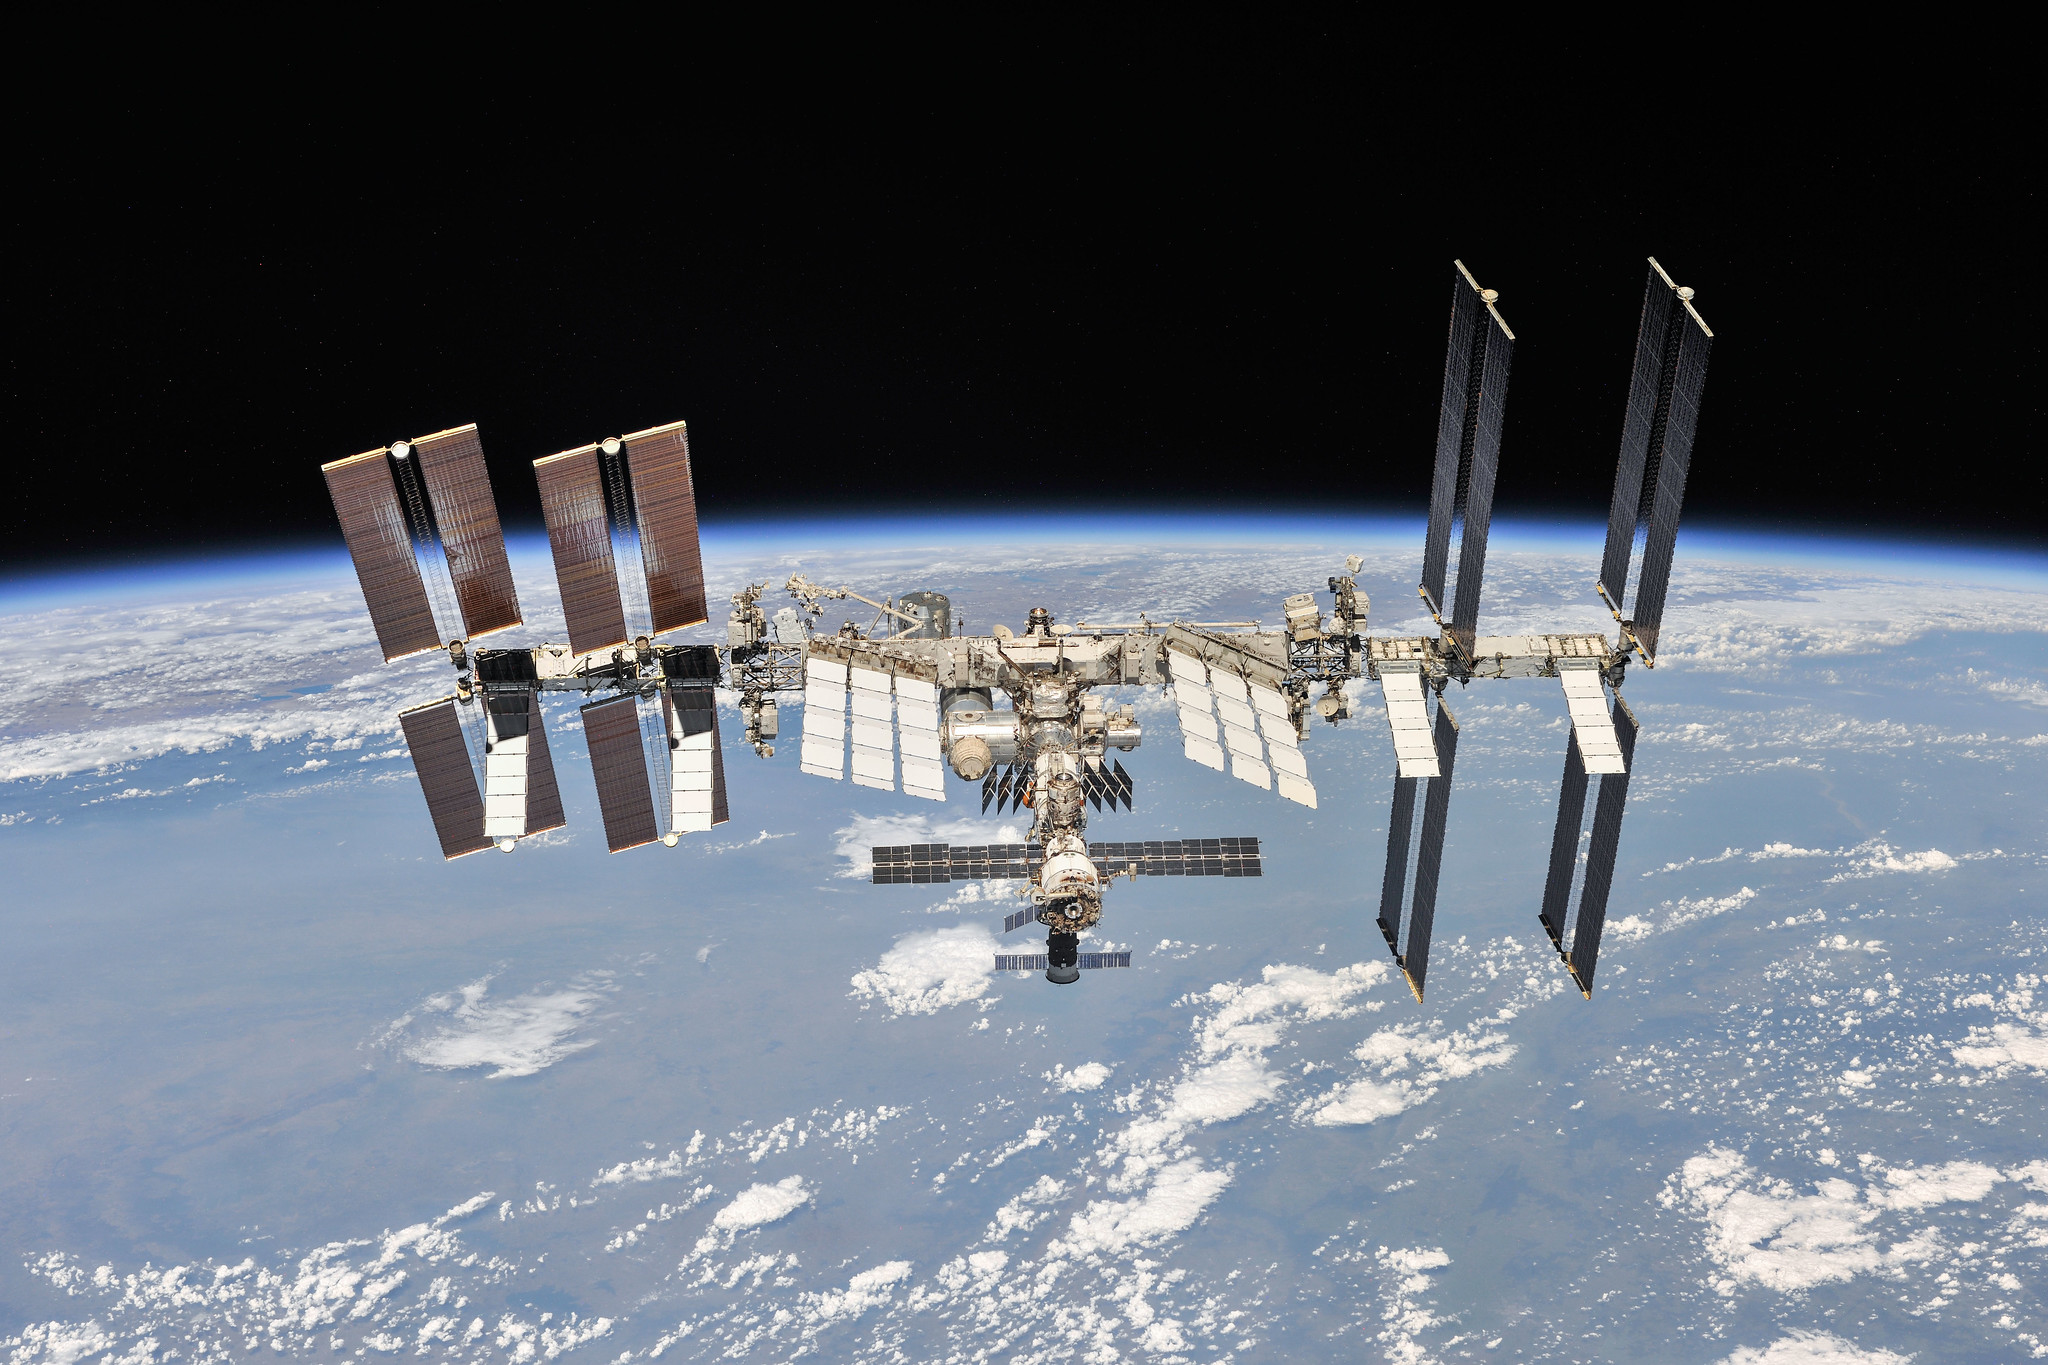 La NASA, l'ESA, il Giappone e il Canada utilizzeranno la ISS fino al 2030, per poi affondare la stazione nell'oceano